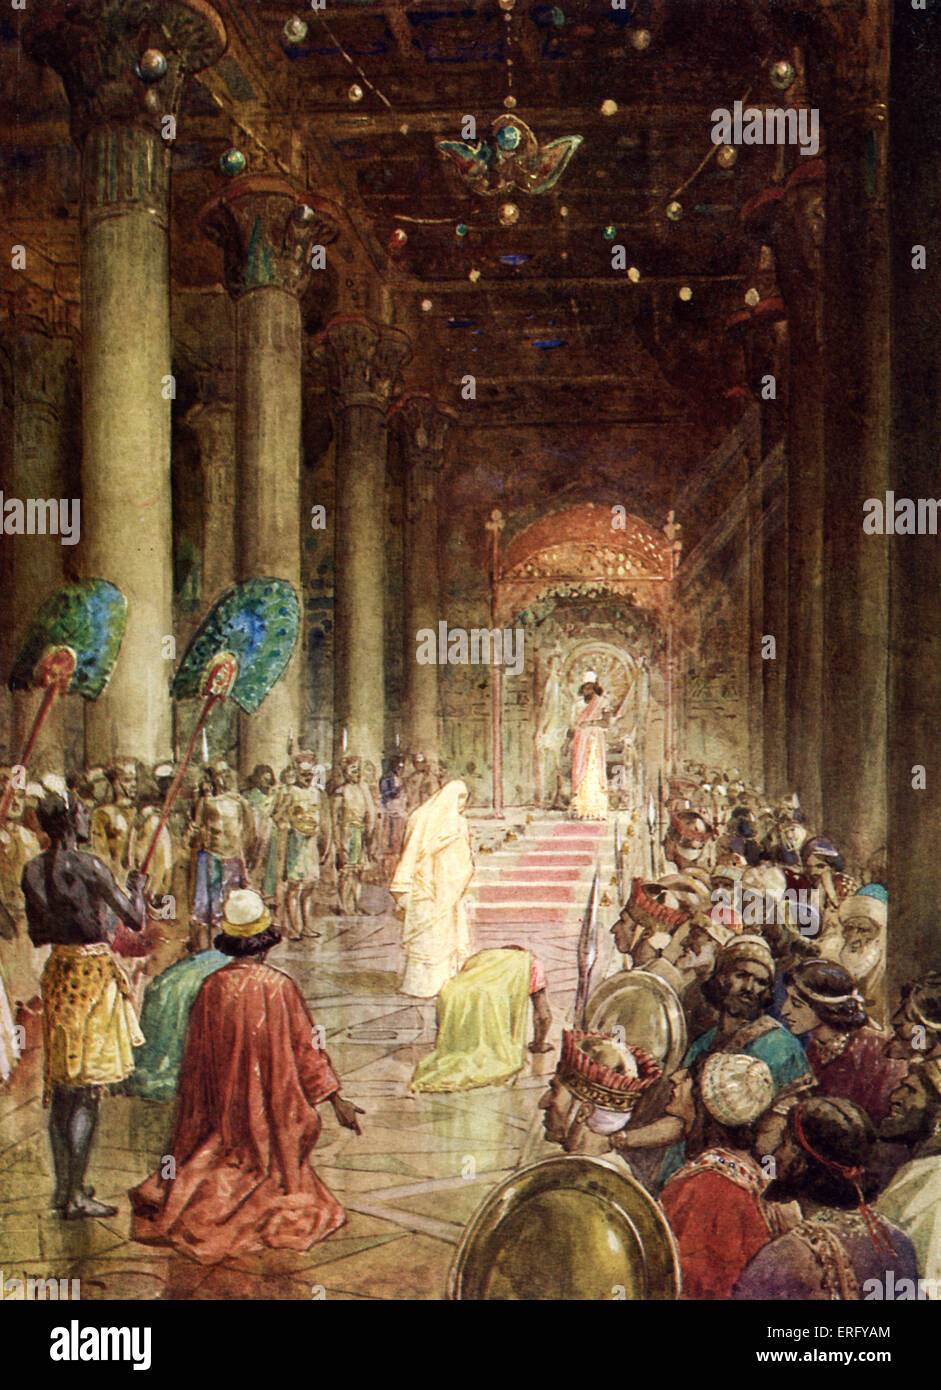 La reina de Sabá viene a visitar la corte del rey Salomón. I Reyes 10: 1-2.  